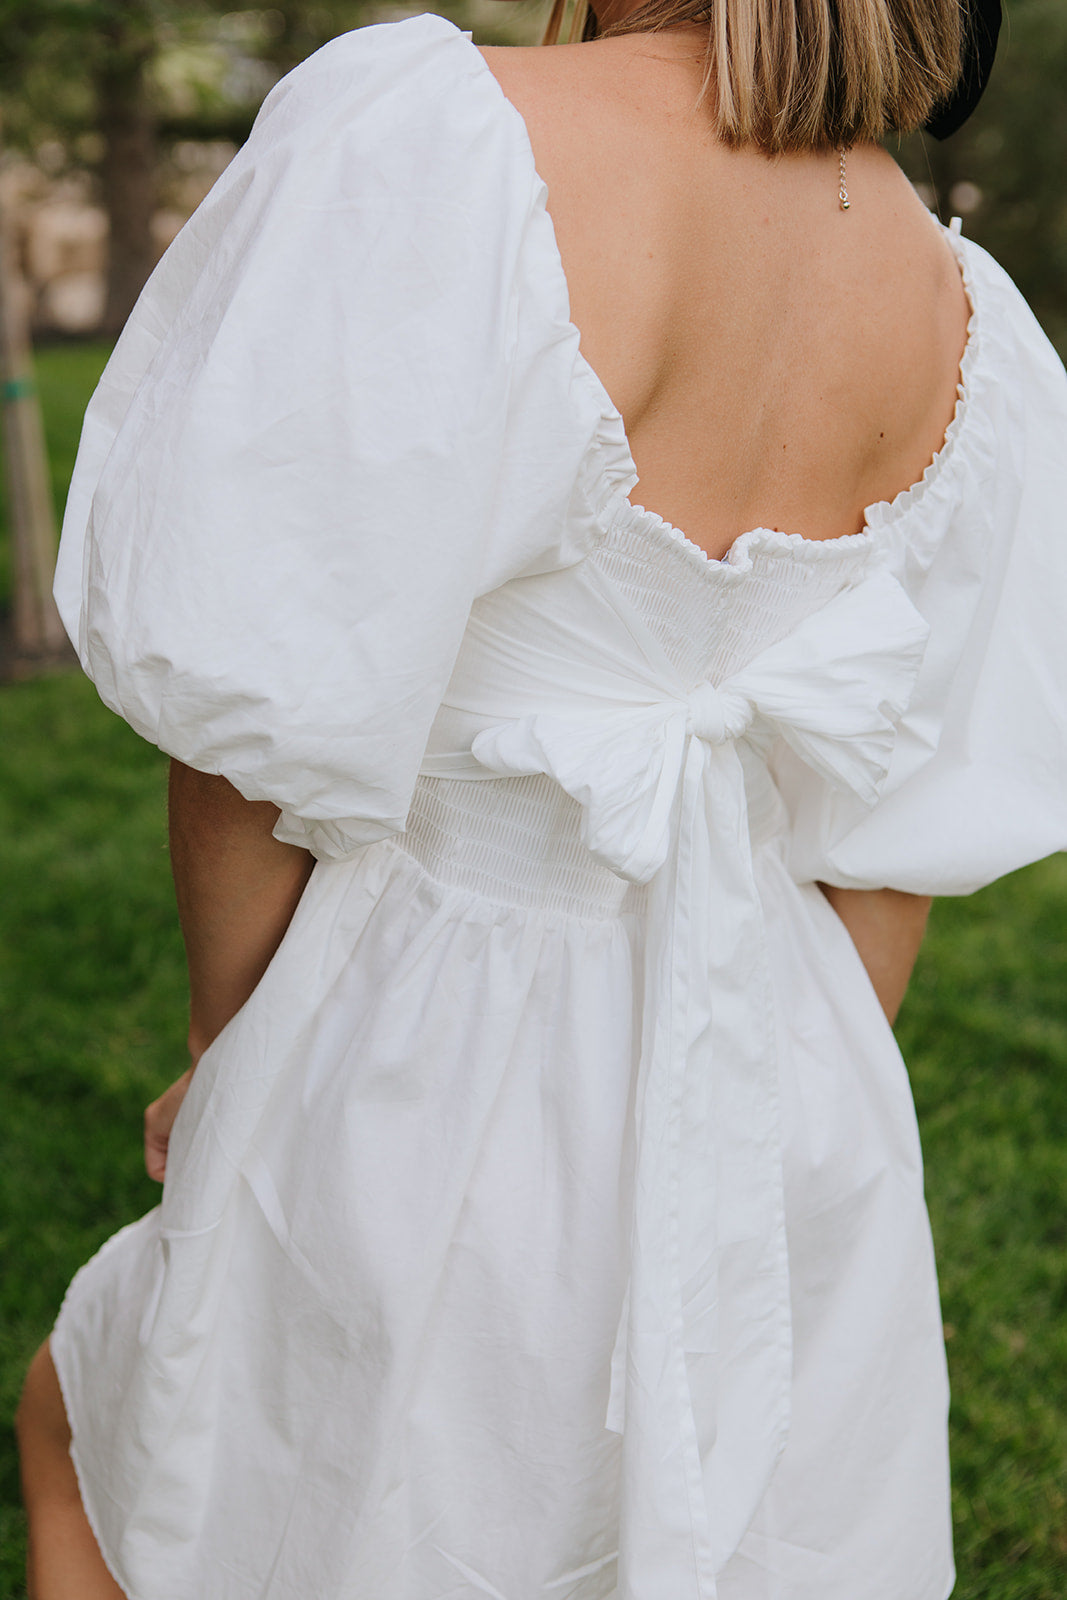 Eloise Bow Back Dress・White ★ Restocked